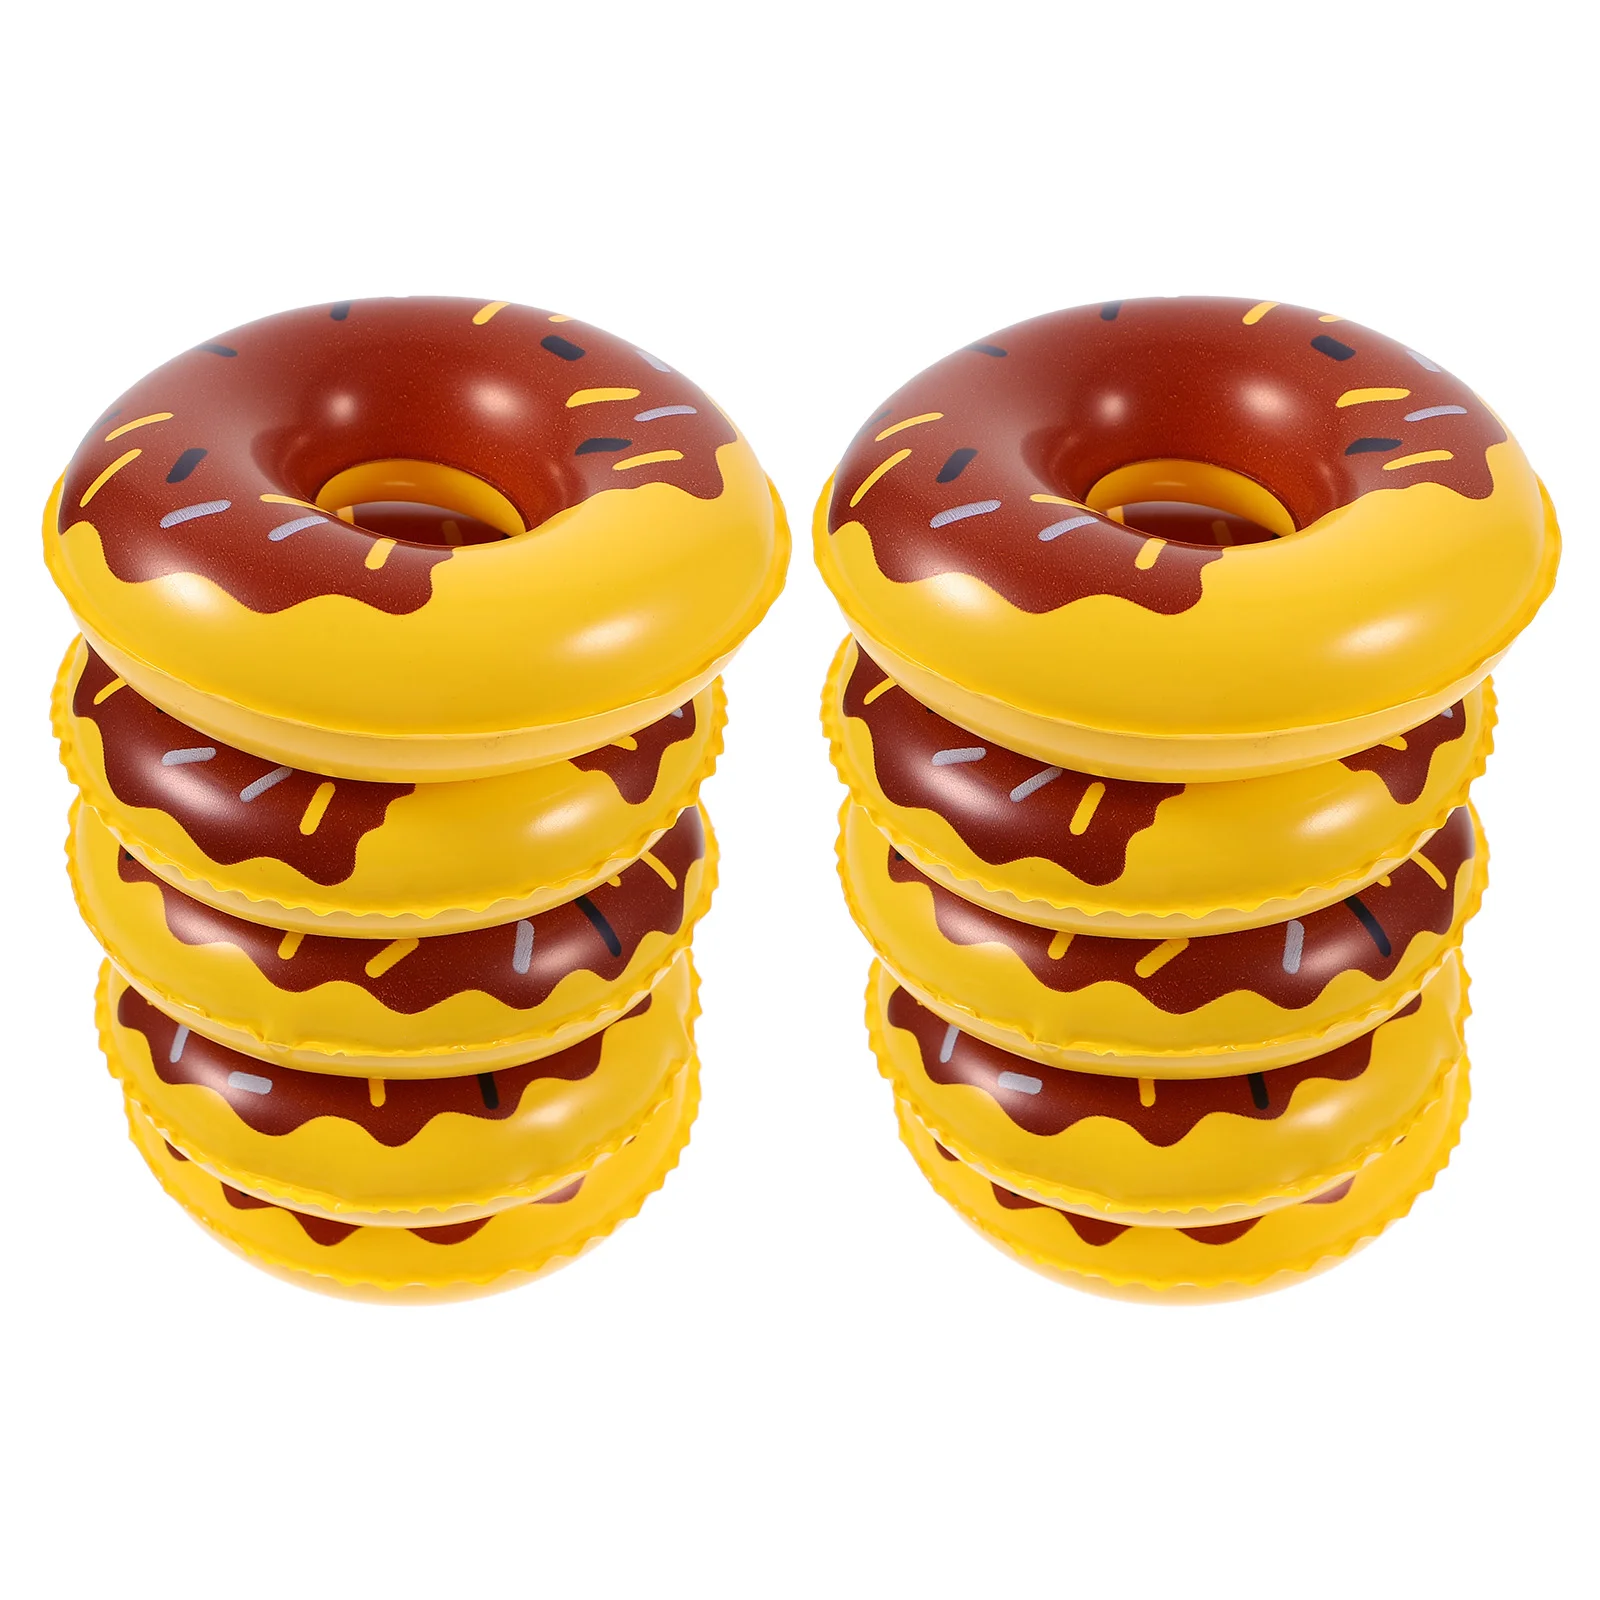 

10pcs Mini Doughnut Swim Rings House Miniature Floating Swim Rings Models